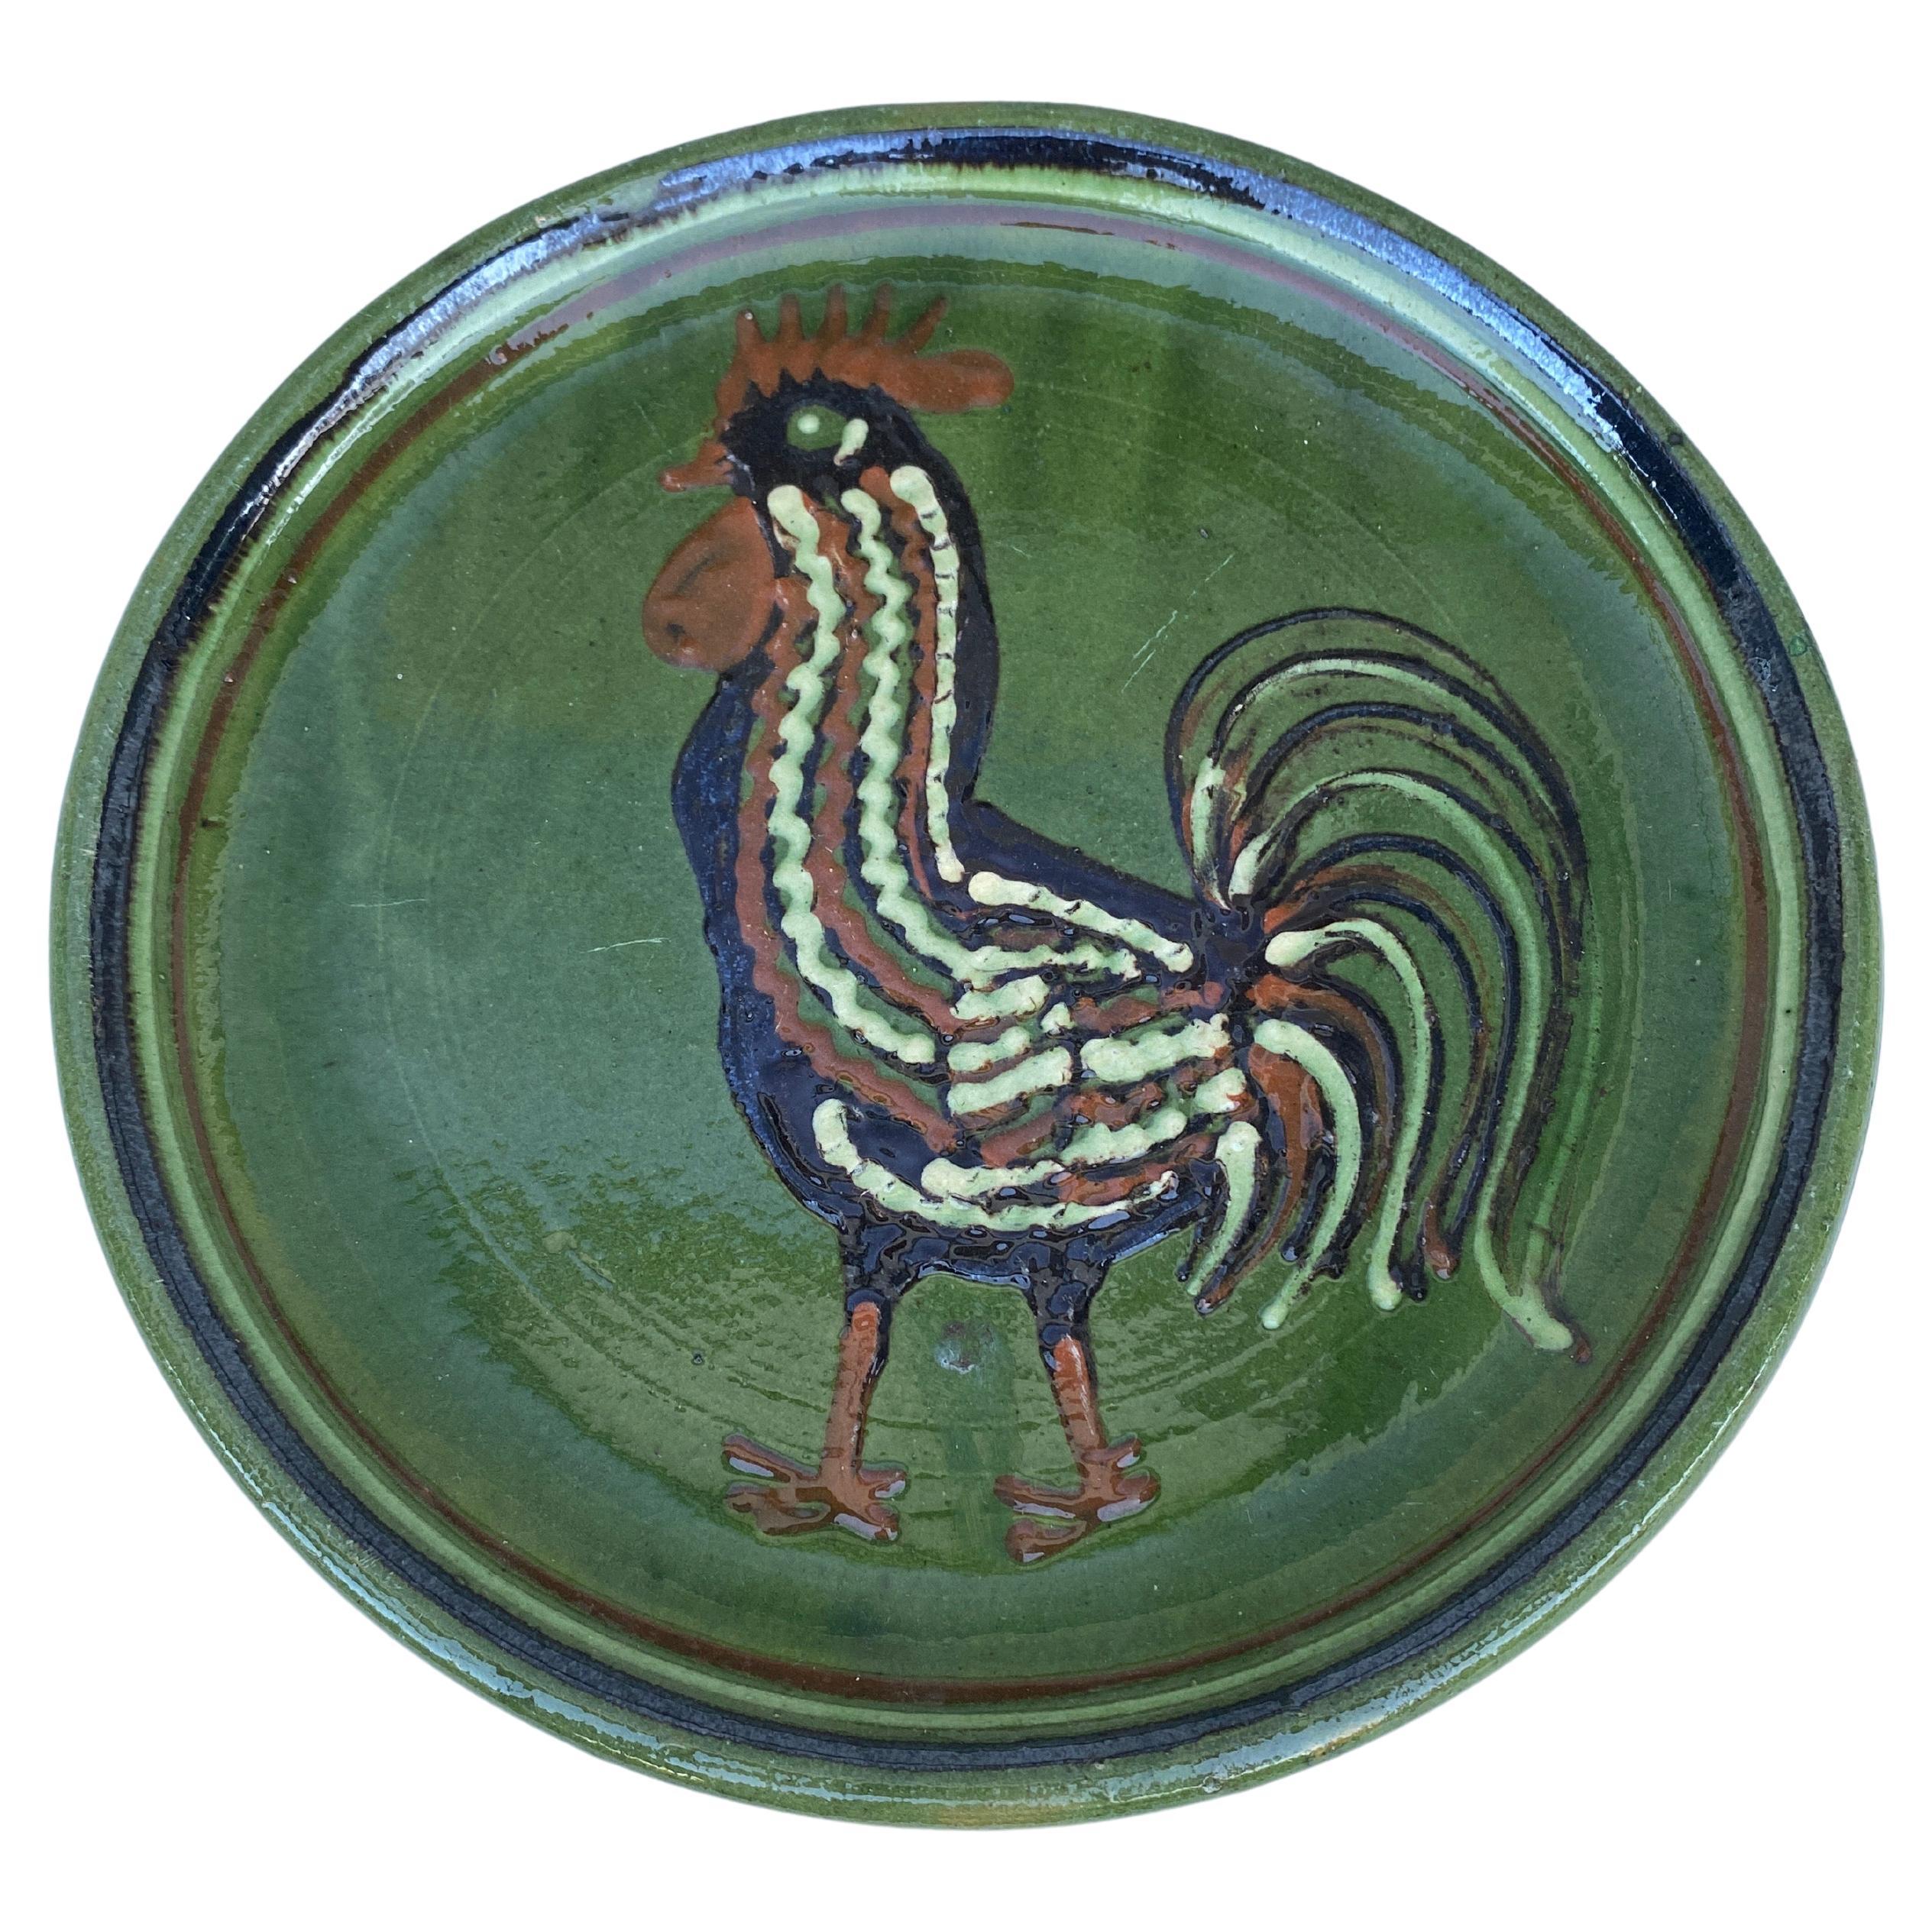 Grand plat à coq en poterie française du 19e siècle.
Style campagnard.